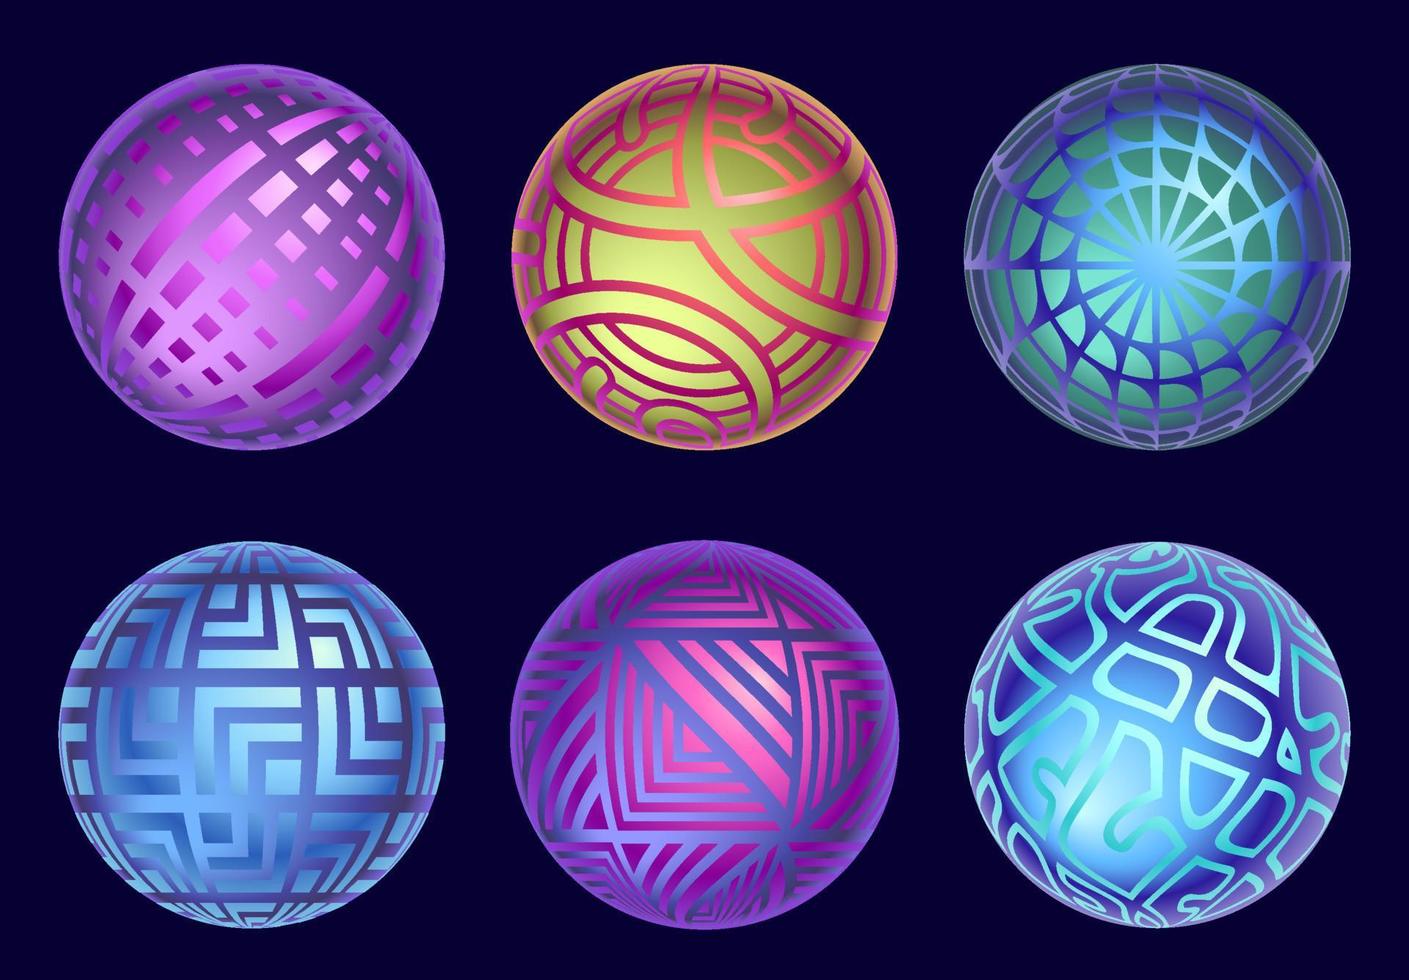 collezione di sfere magiche. set di sfere vettoriali mistiche isolate su sfondo scuro. sfere magiche misteriose astratte nei colori gialli, blu, viola.